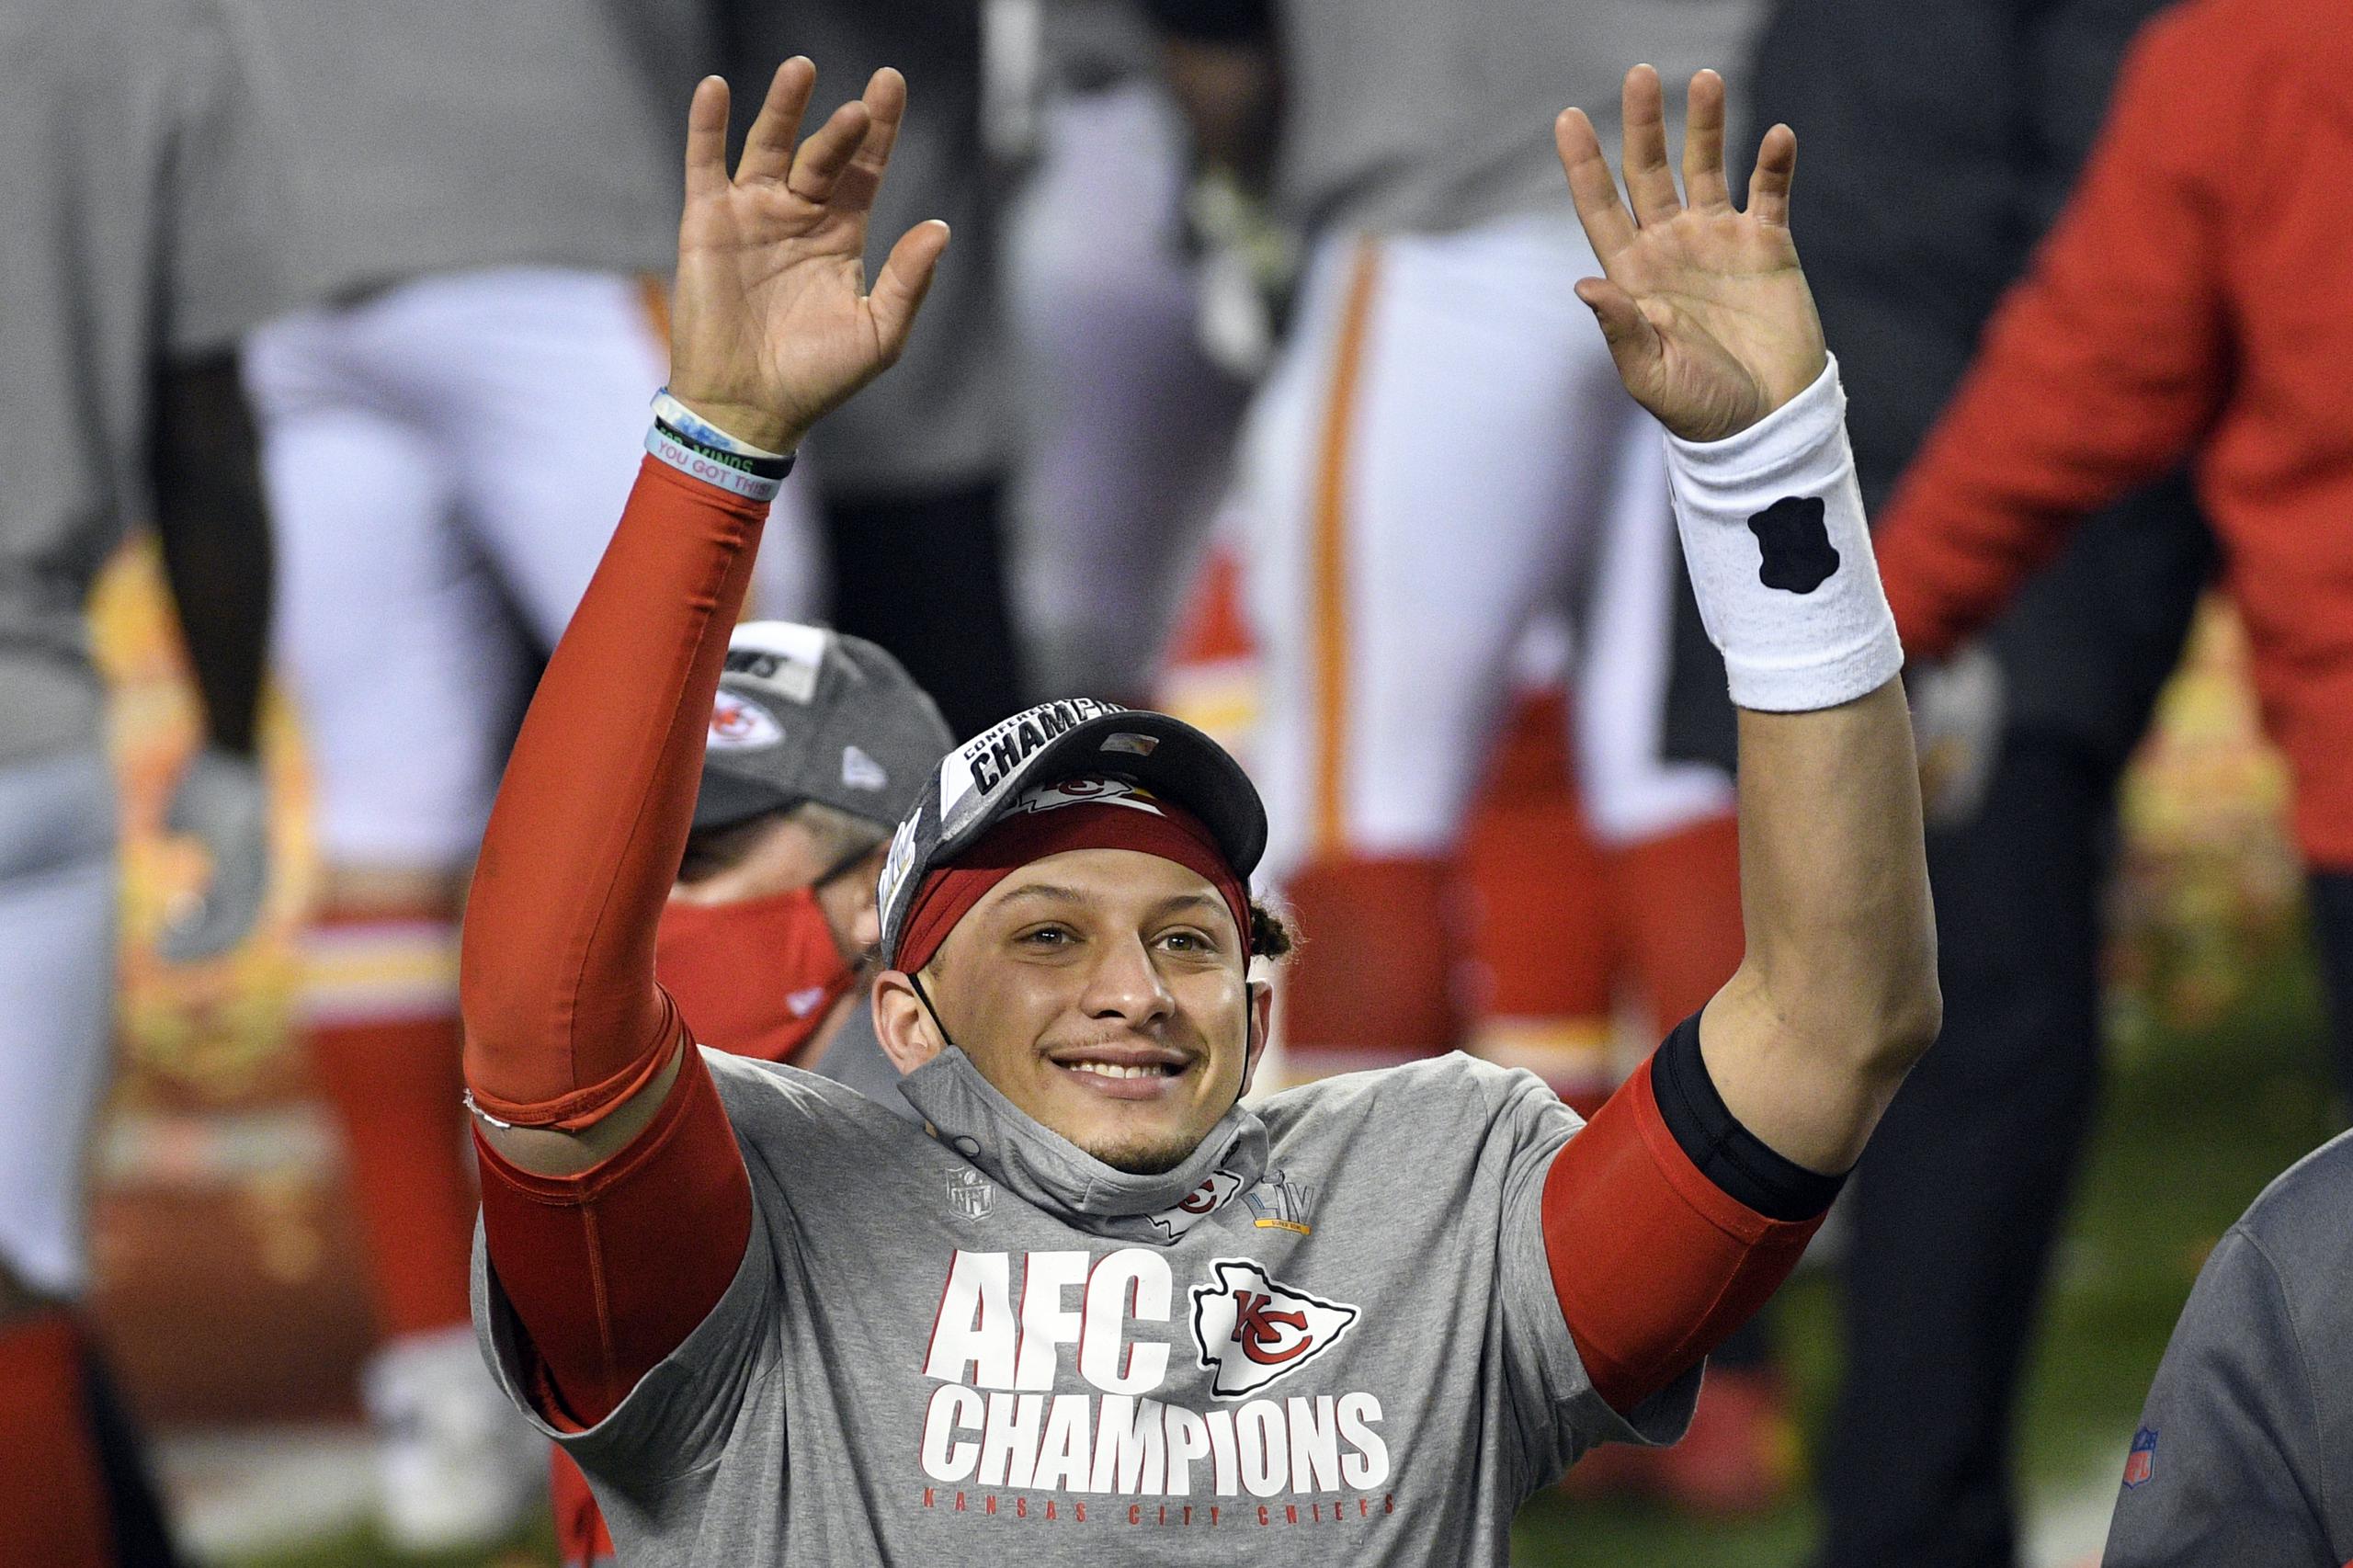 El quarterback de los Chiefs de Kansas City, Patrick Mahomes, celebra luego de que su equipo se coronara como campeón de la AFC y adelantara al Super Bowl por segundo año seguido.